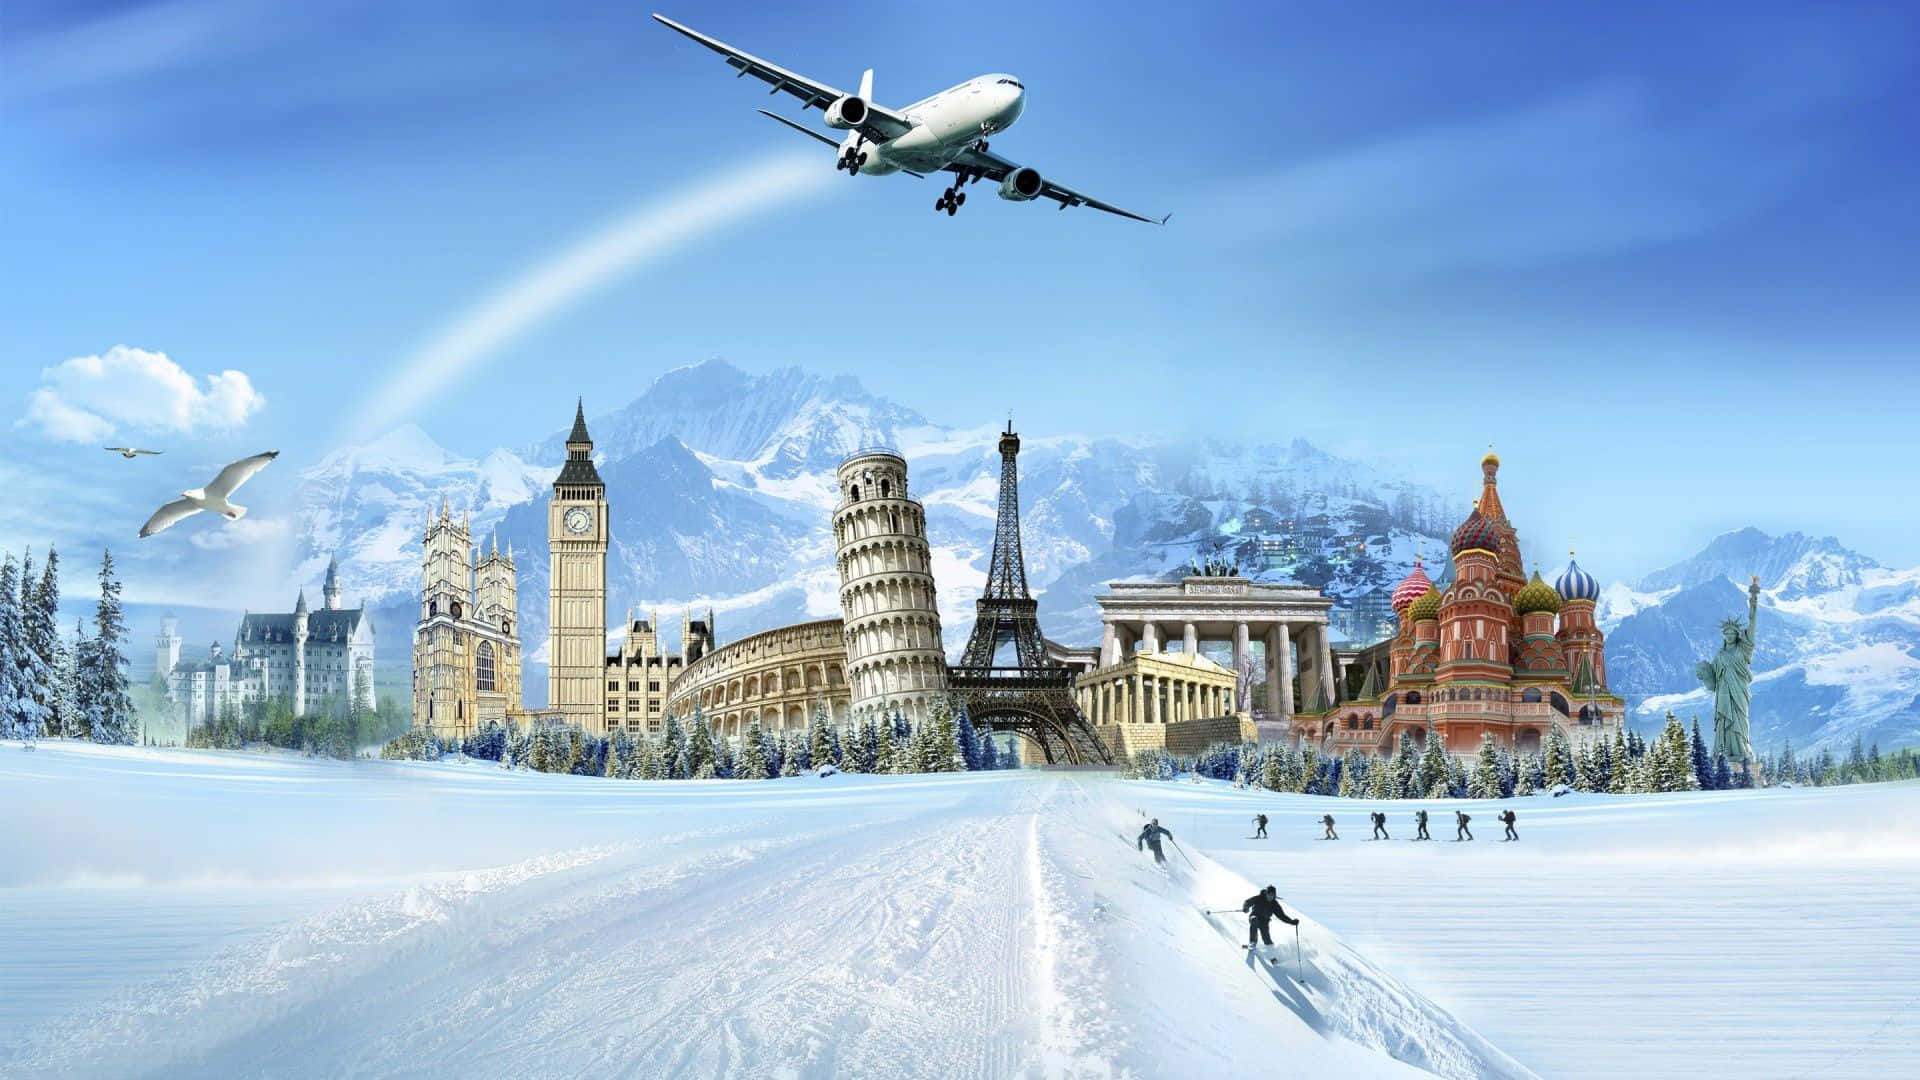 Winter Travel Fantasy Landscape.jpg Wallpaper